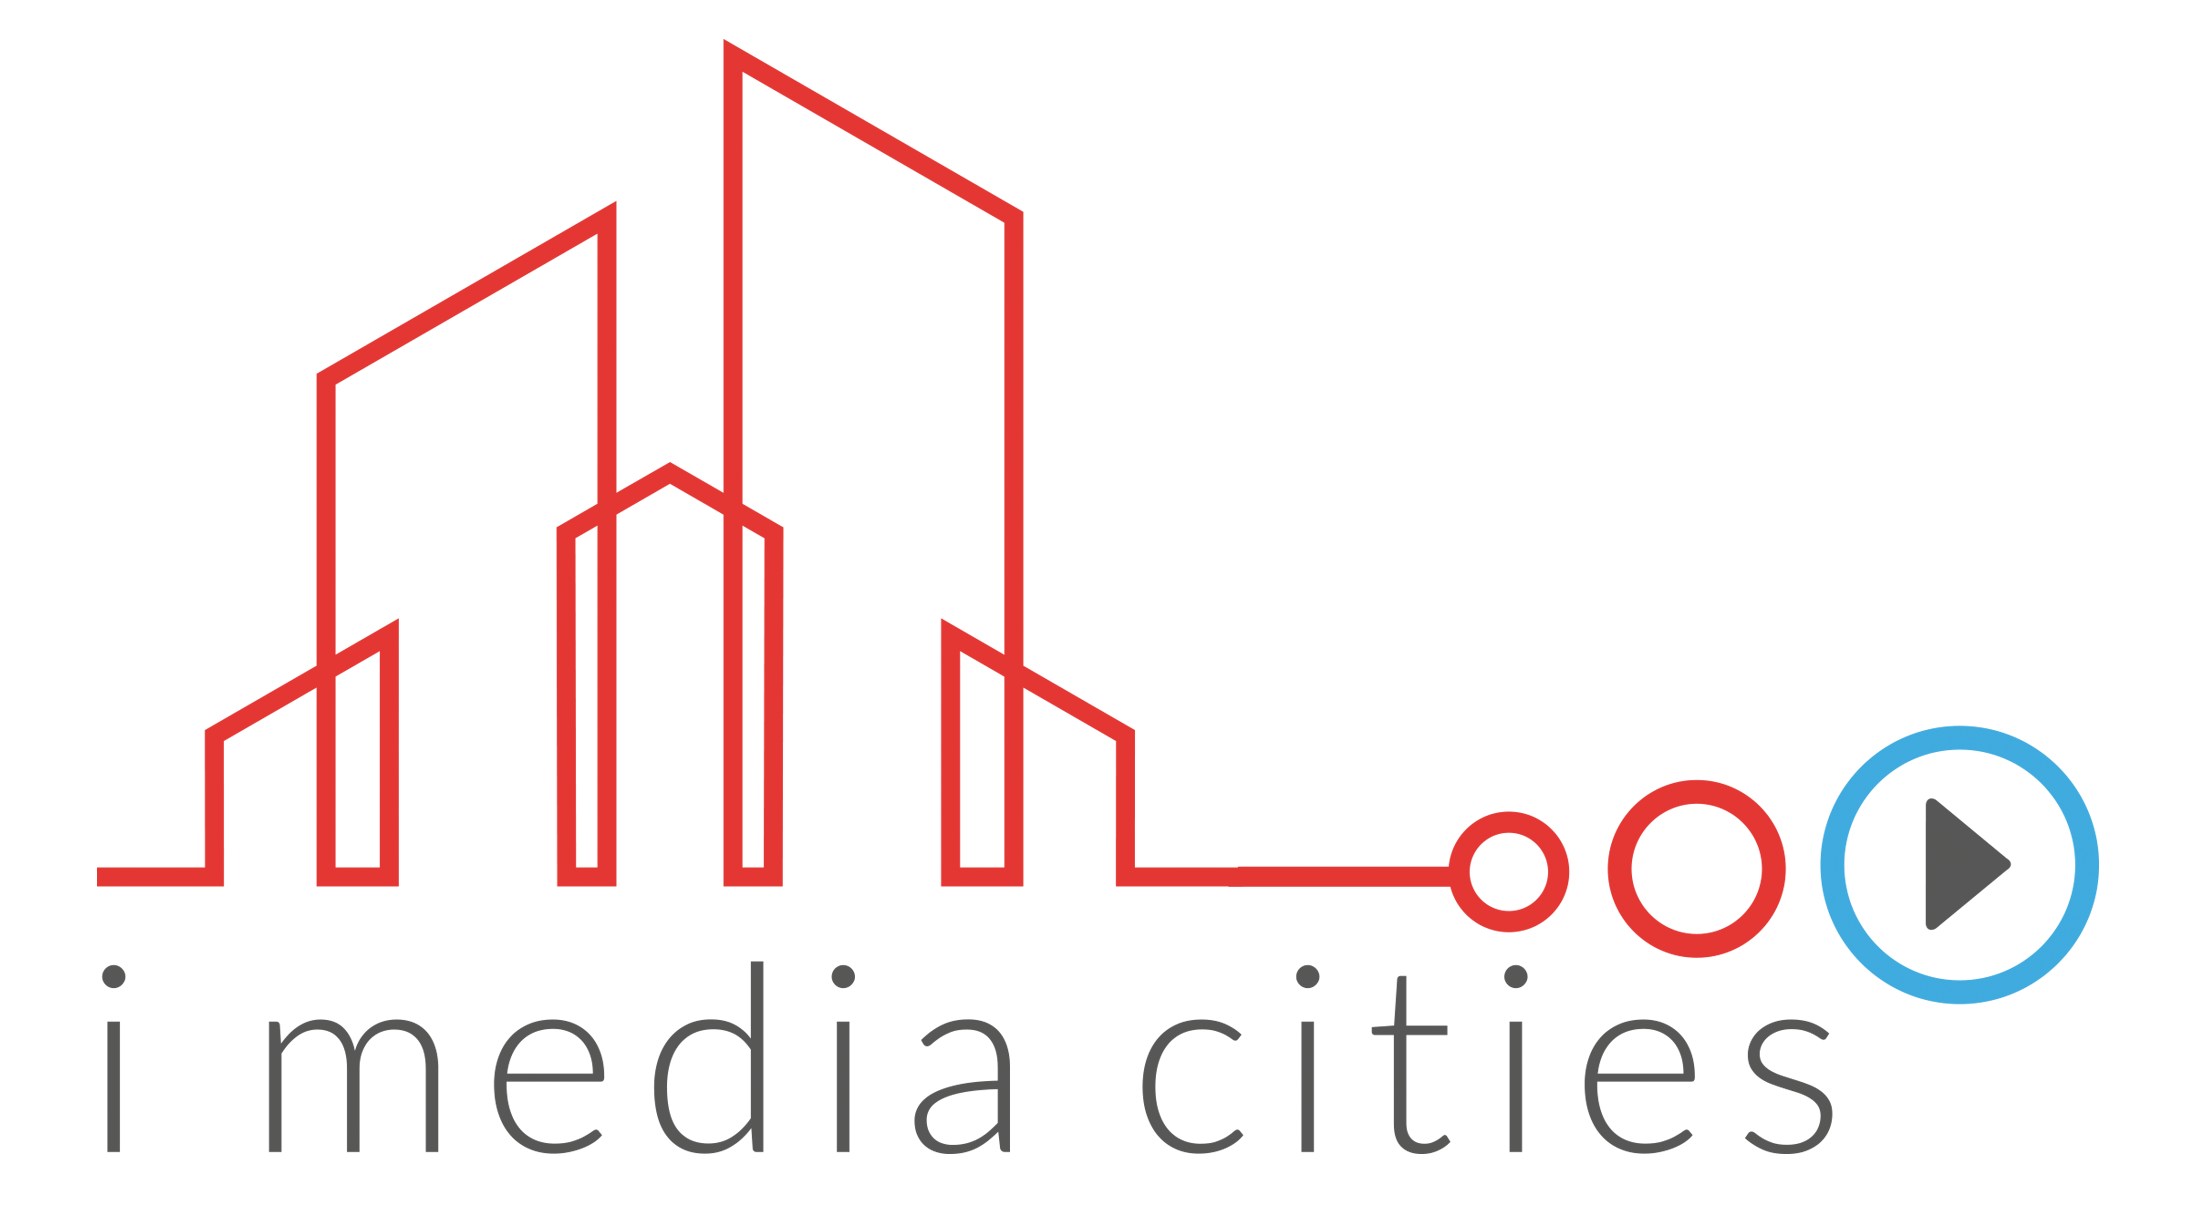 I-Media-Cities